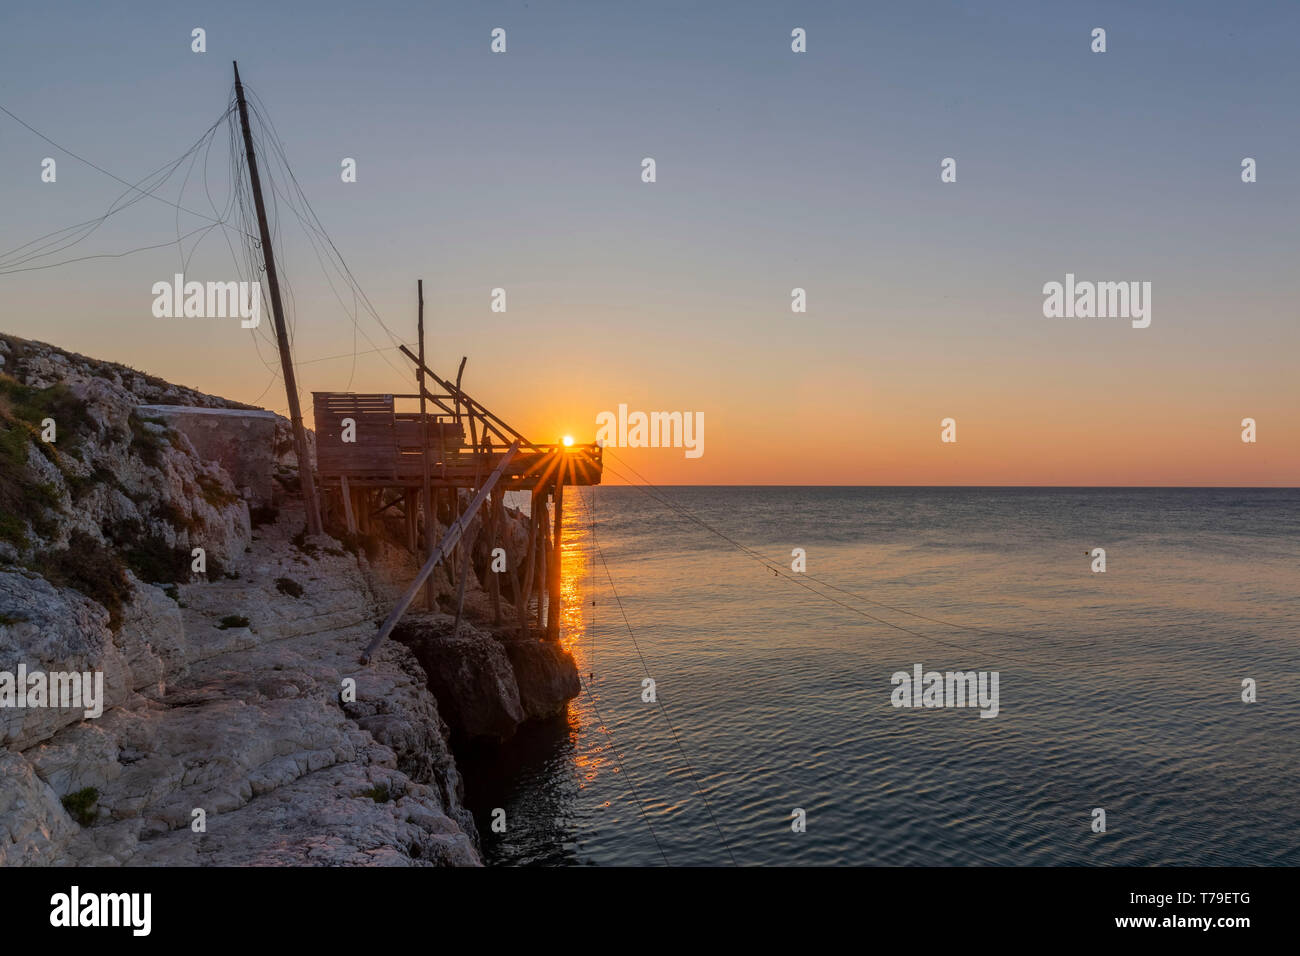 Lever du soleil sur Trabucco à Vieste, une ancienne maison de pêcheurs typiques de la côte des Abruzzes Région et dans la côte du Parc National du Gargano, Italie Banque D'Images